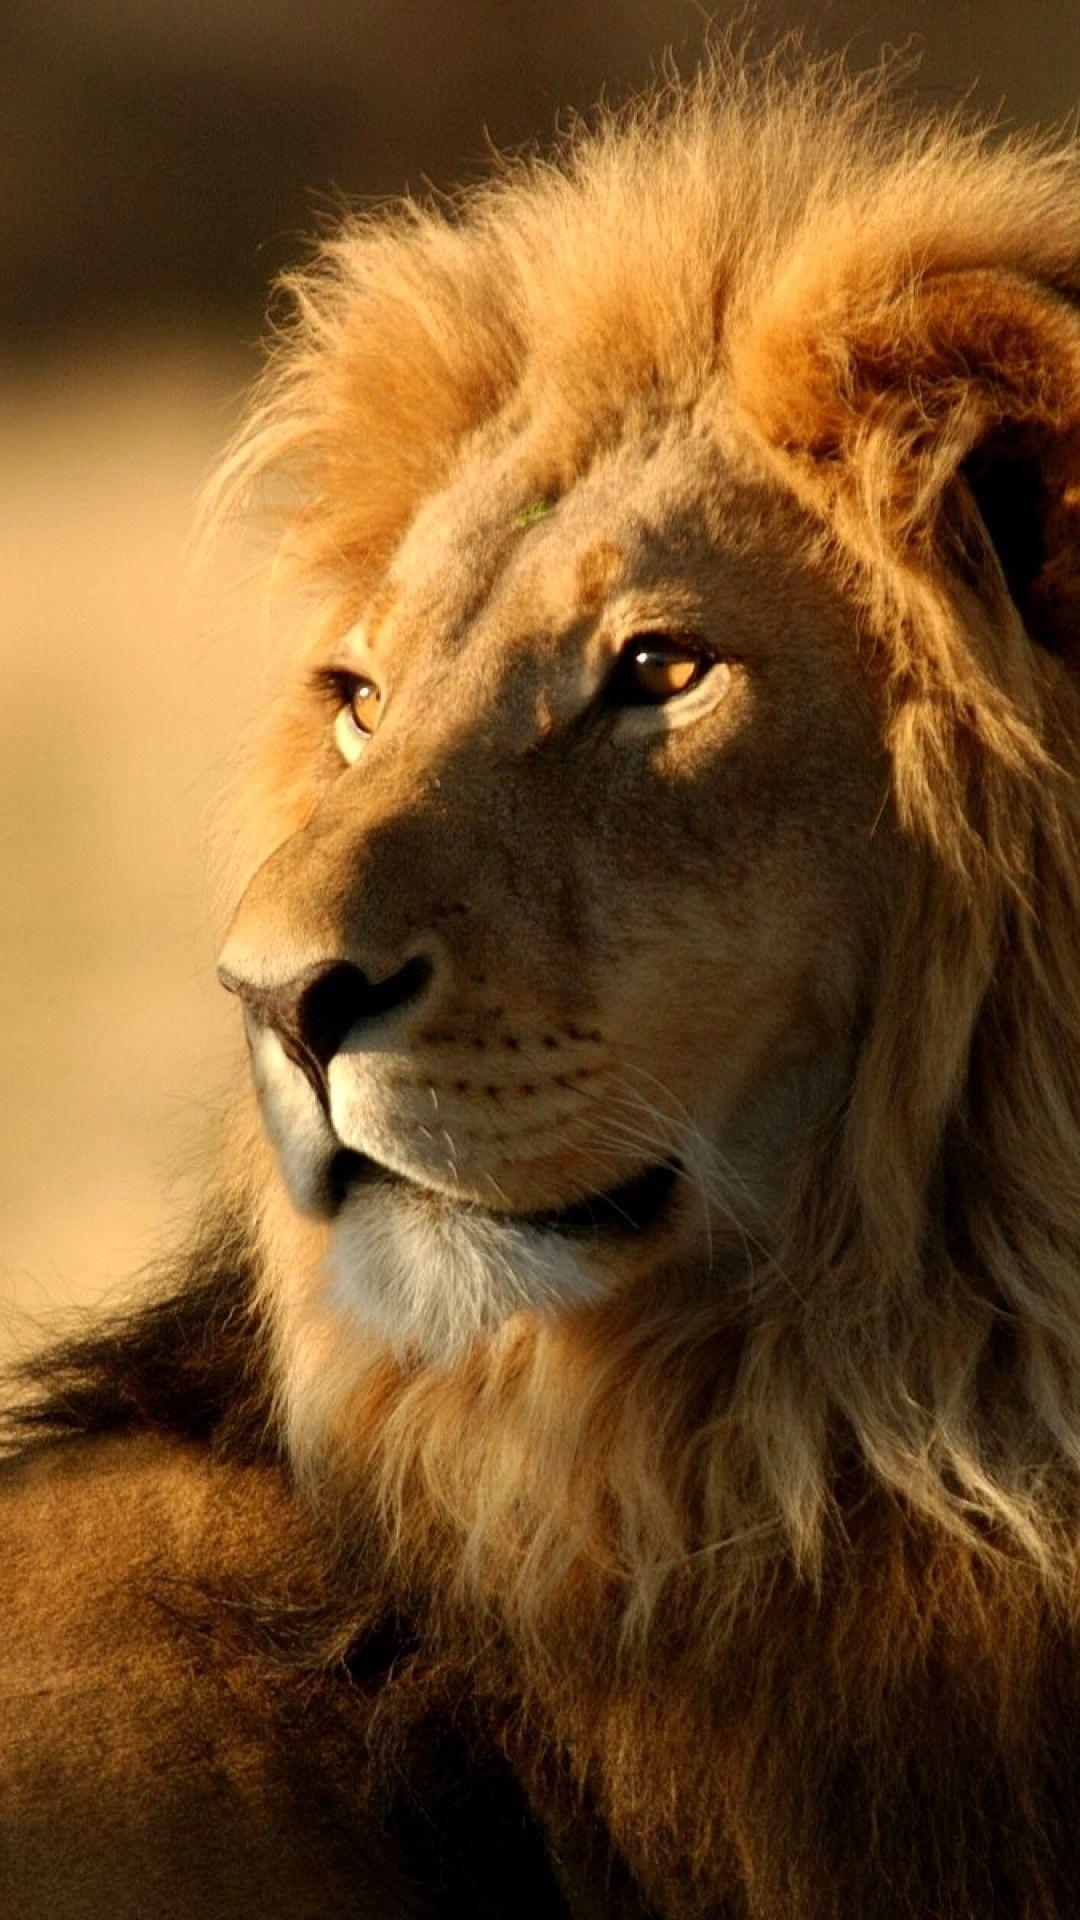 Lion Wallpaper HD Animals Lion iPhone 6 Plus Wallpaper #bigcats. Animals, Animals beautiful, Wild cats